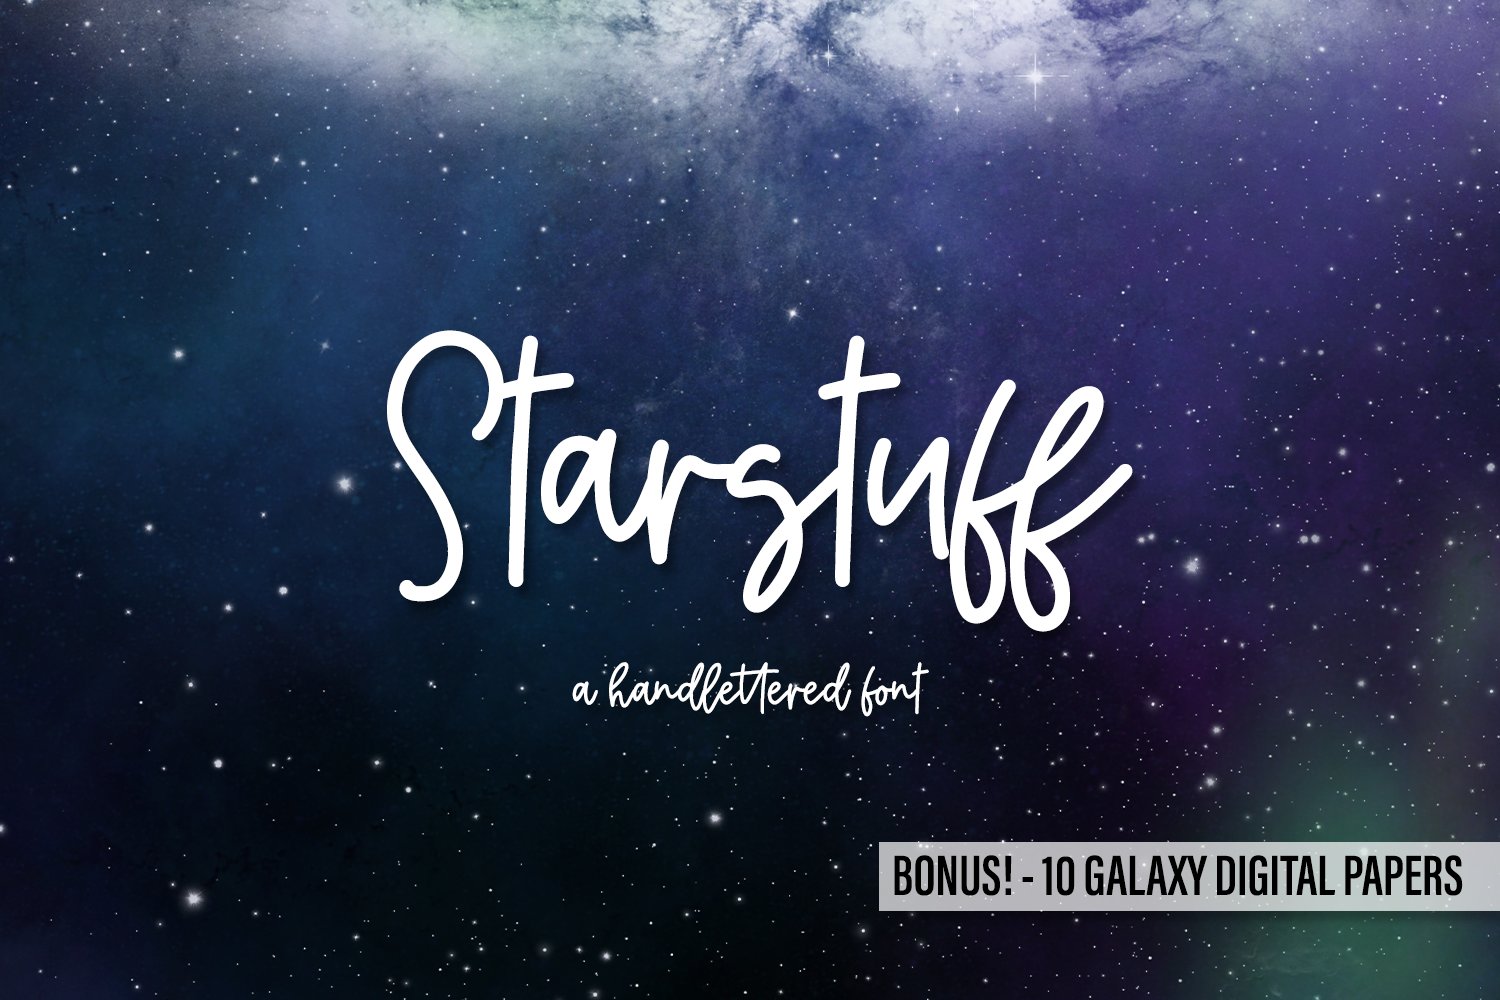 Starstuff Script + Bonus Papers cover image.